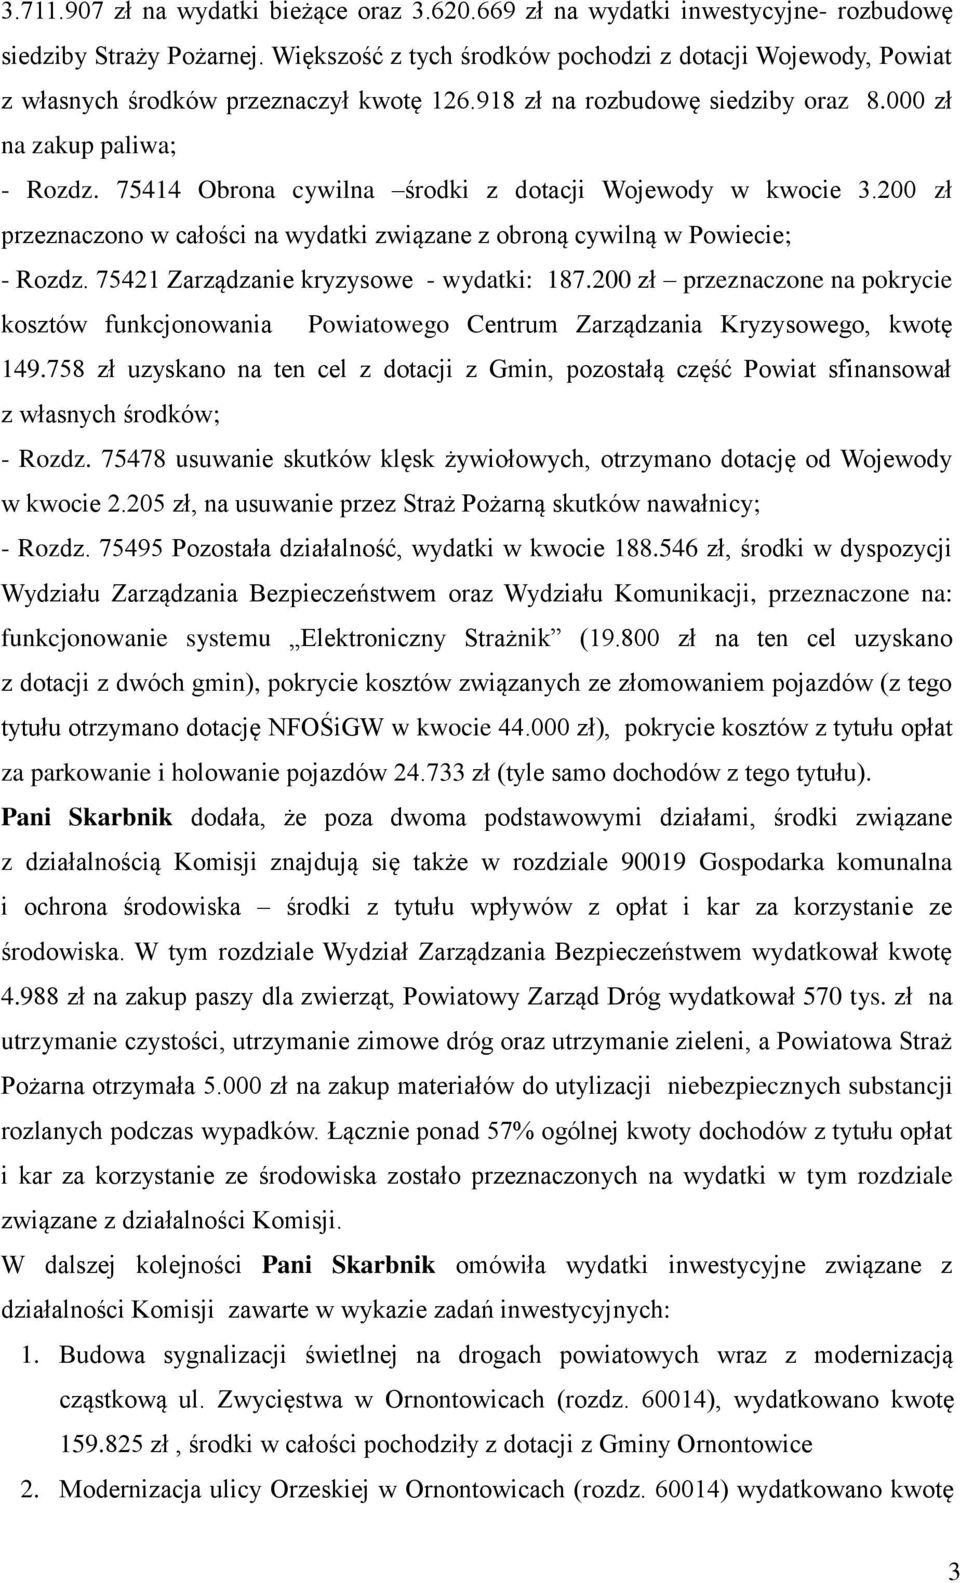 75414 Obrona cywilna środki z dotacji Wojewody w kwocie 3.200 zł przeznaczono w całości na wydatki związane z obroną cywilną w Powiecie; - Rozdz. 75421 Zarządzanie kryzysowe - wydatki: 187.